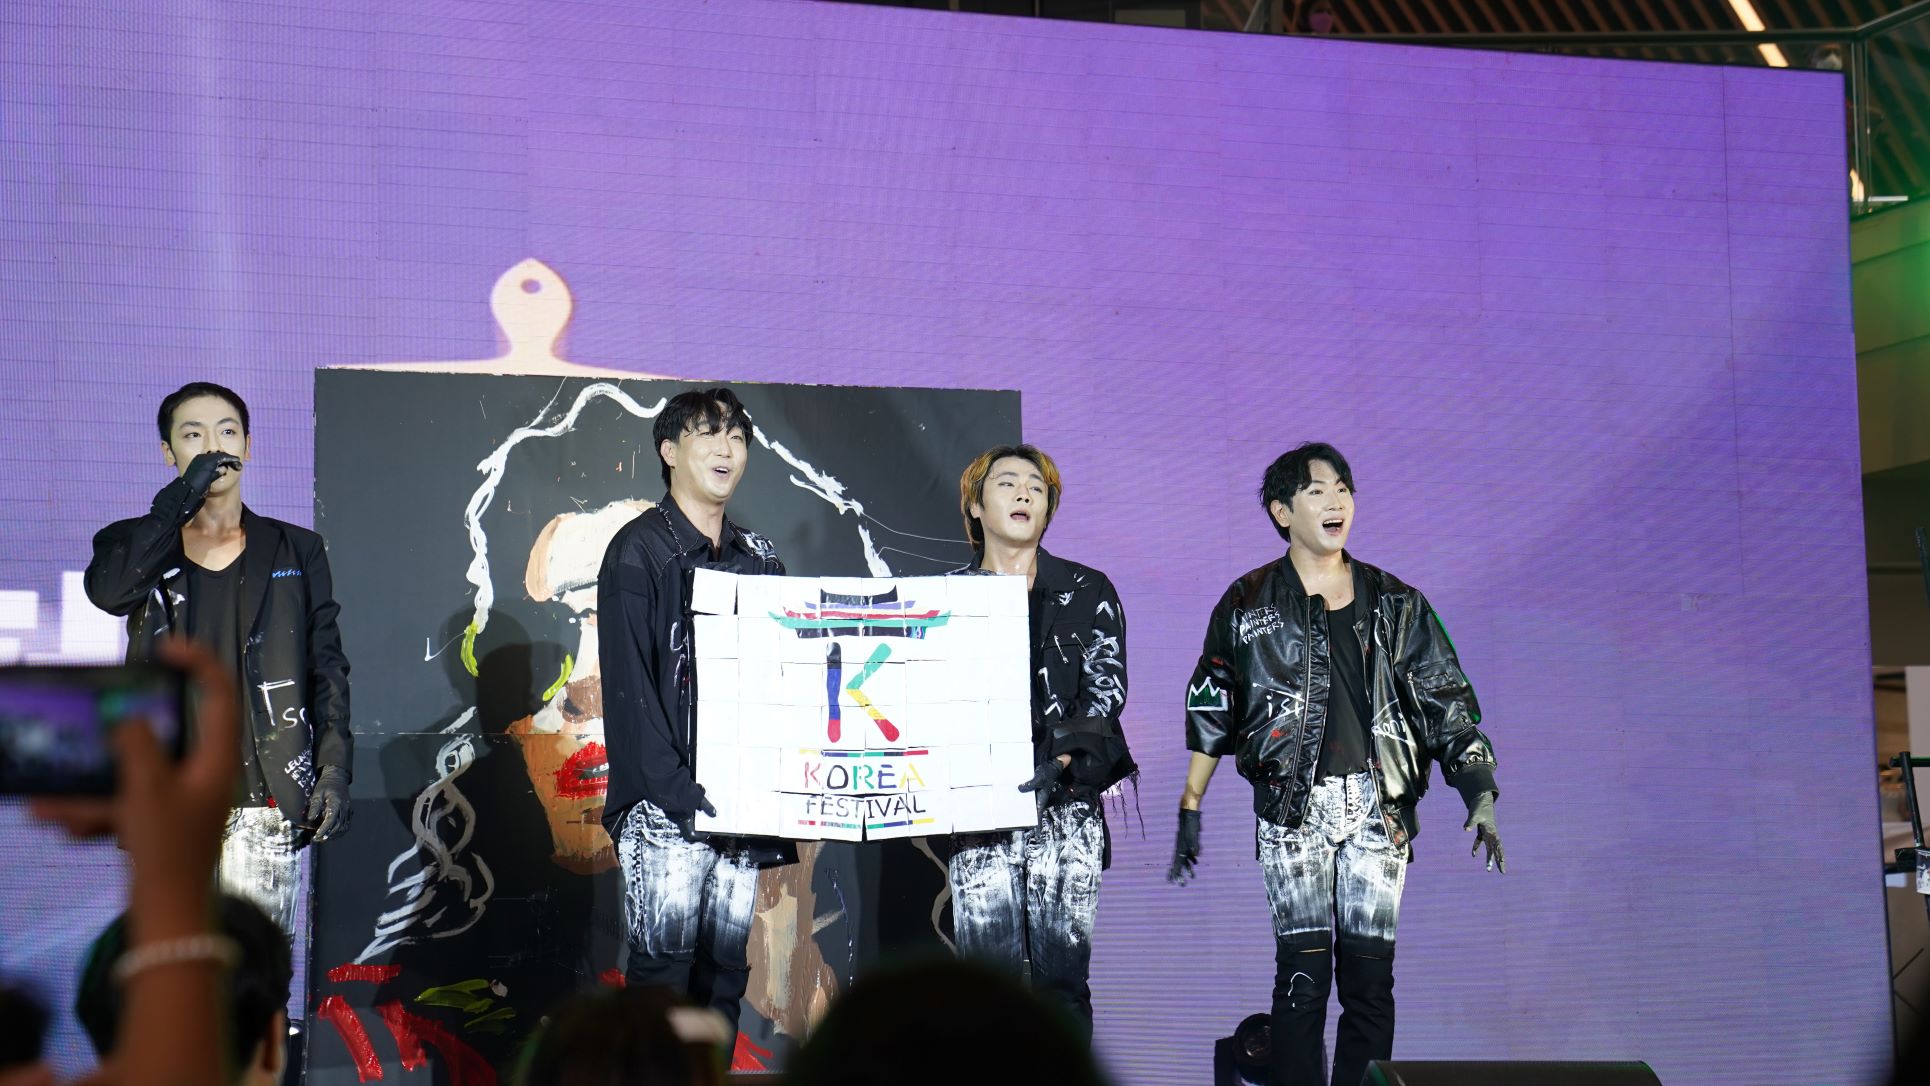 ▴2022 한가위 맞이 코리아 페스티벌(Korea Festival) 개막 축하 공연을 선보이는 미술 공연단 ‘페인터즈’